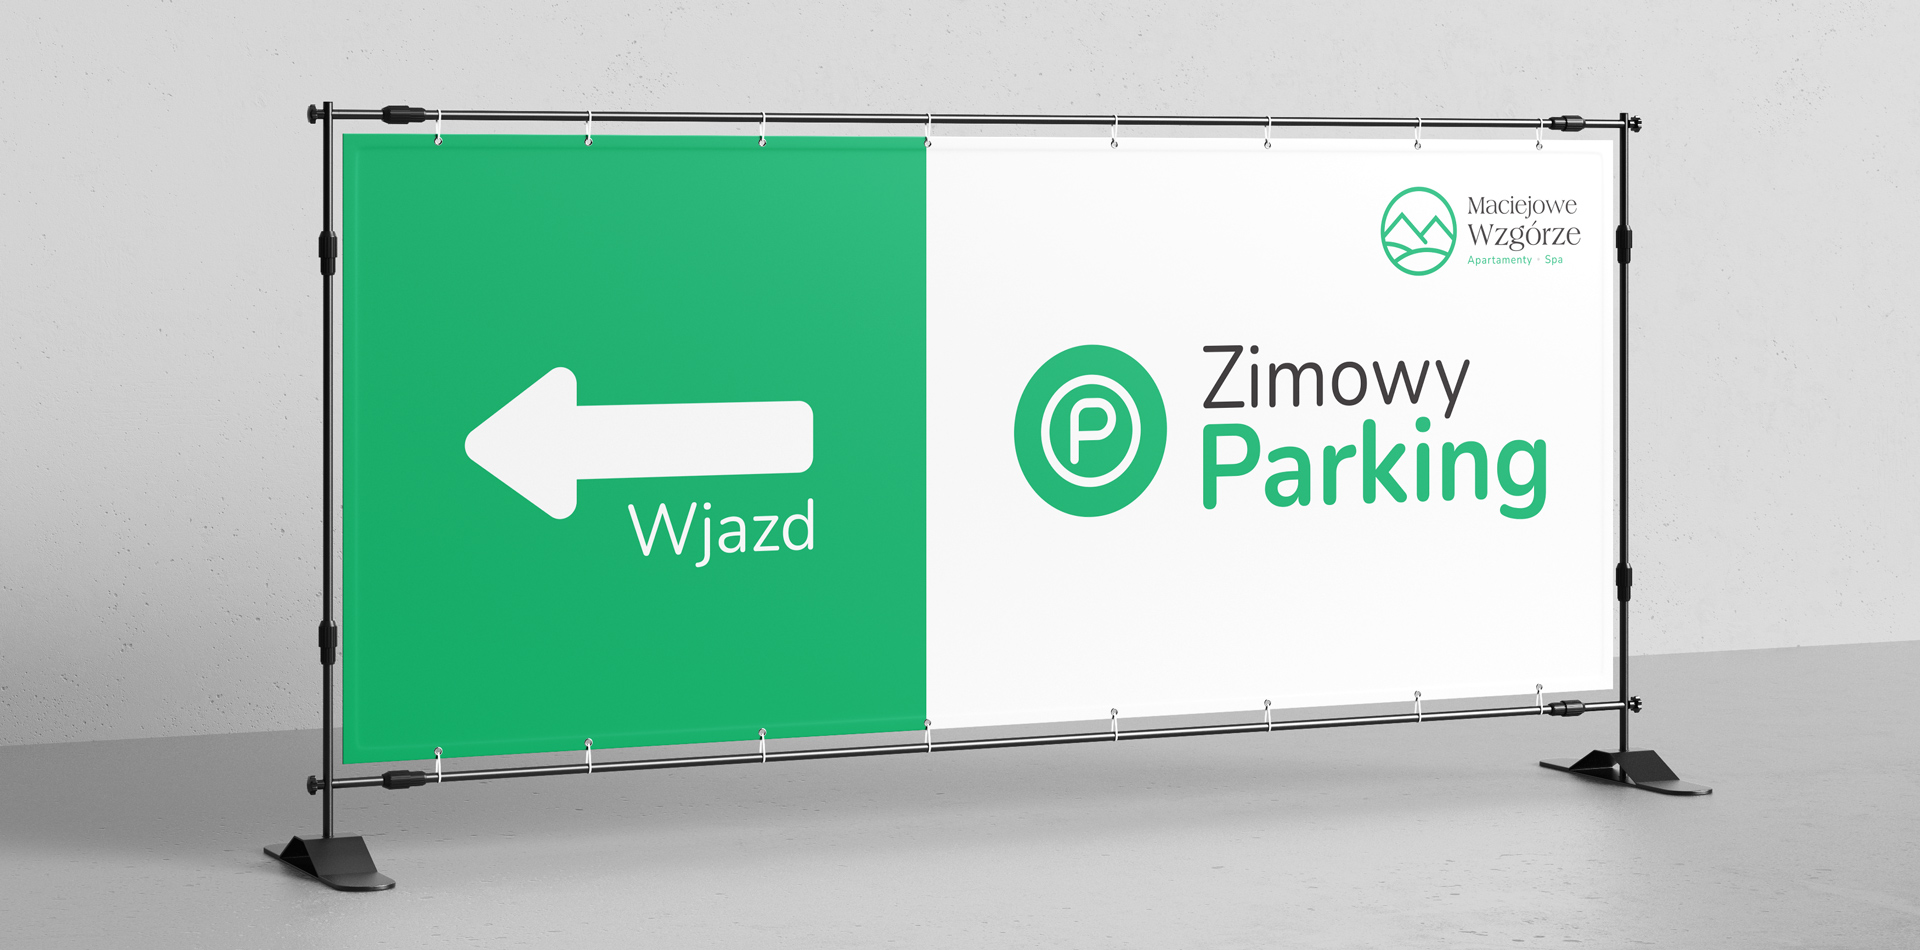 Maciejowe Wzgórze - Parking - Banner